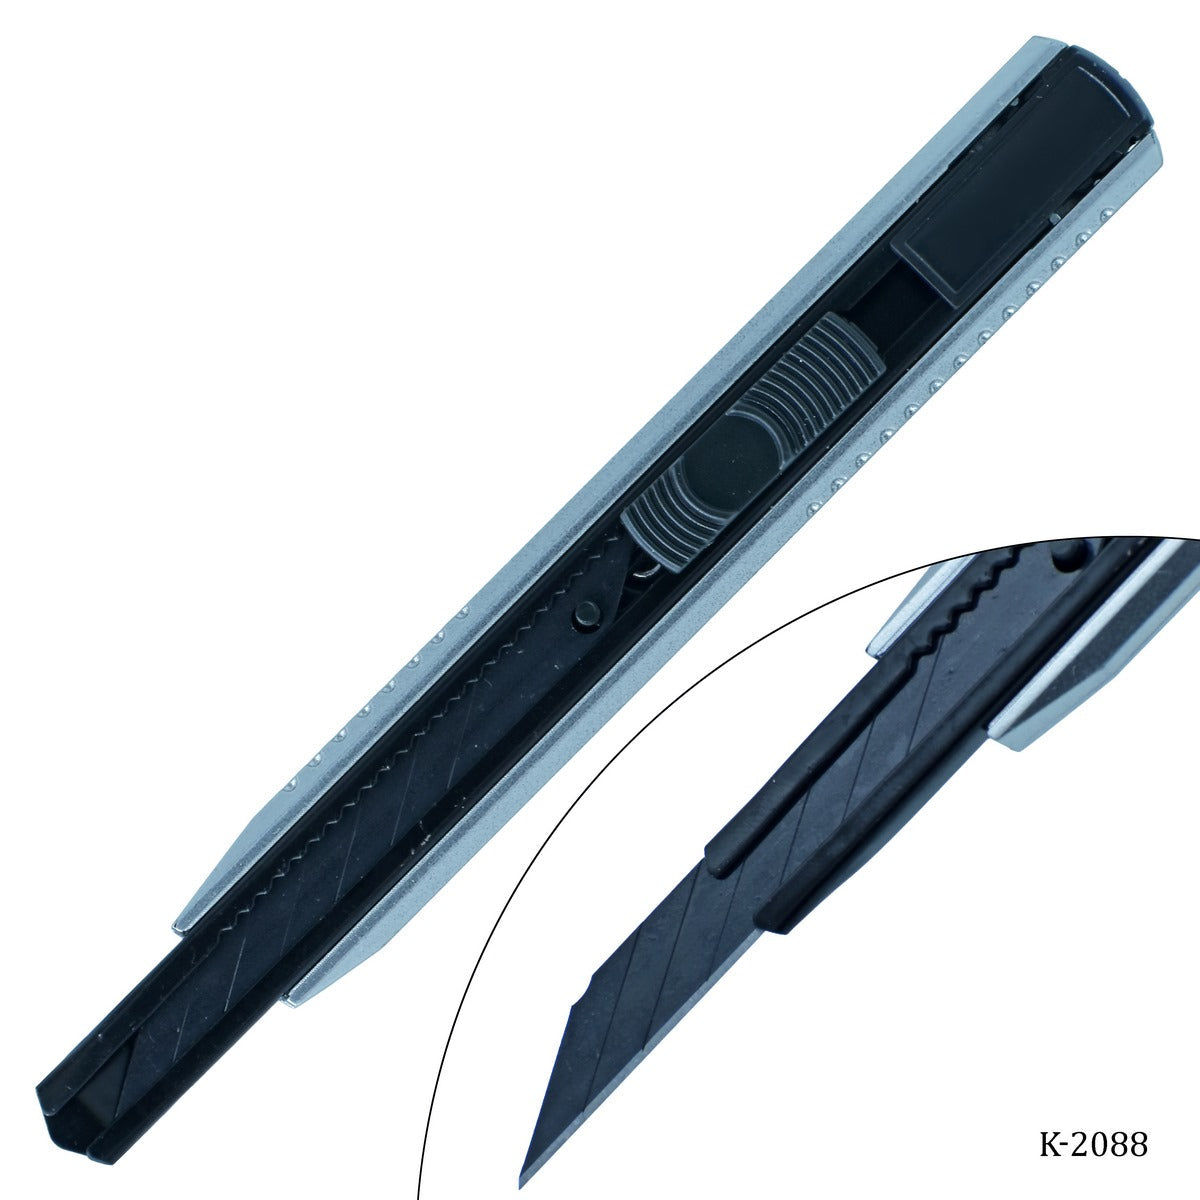 jags-mumbai Knife & Cutter Cutter Knife 18mm Wide Blade